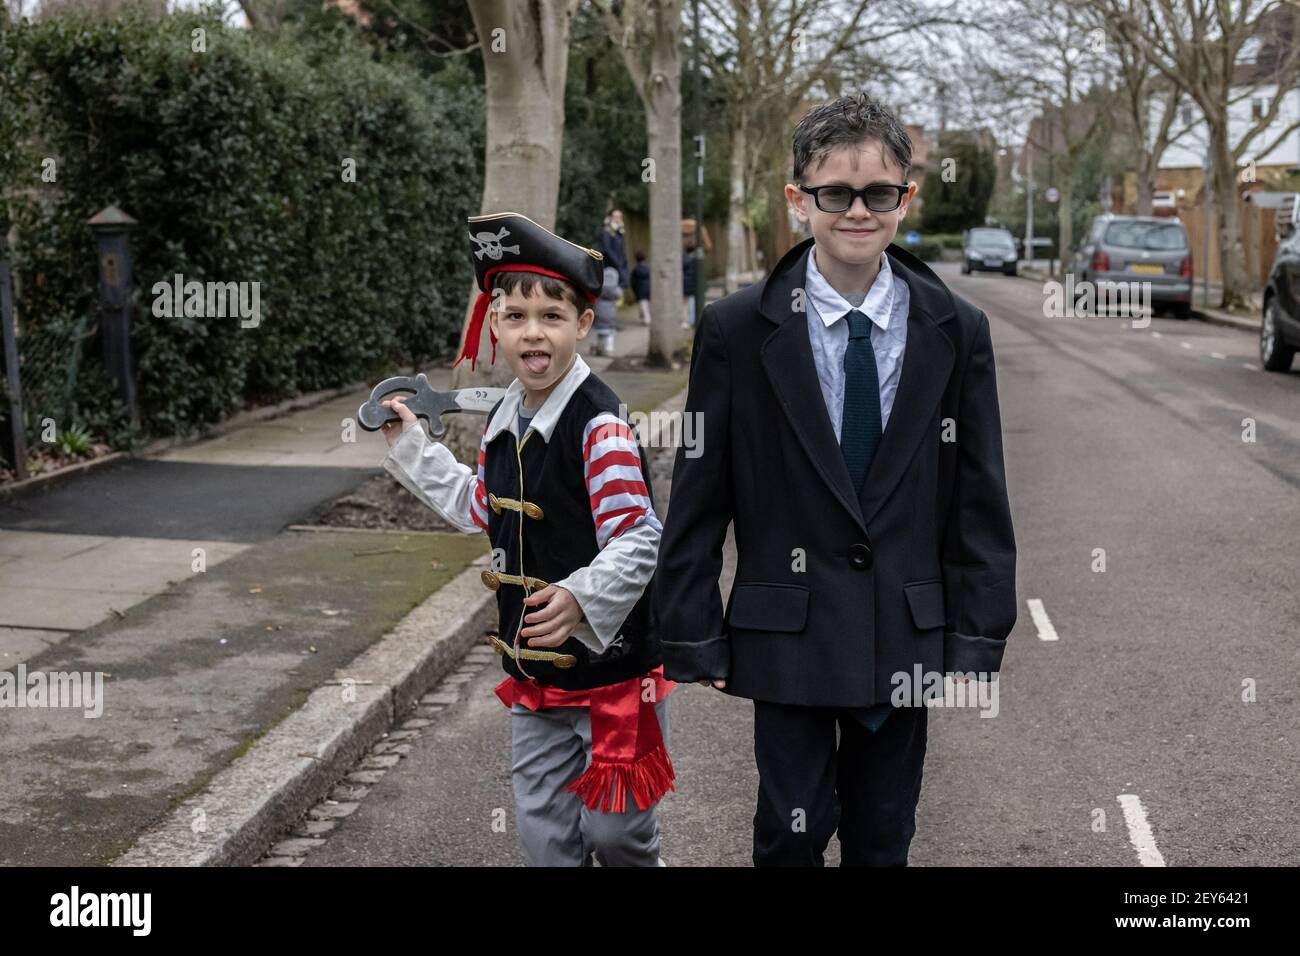 Grundschuljungen in Kostüm für World Book Day, London, England, Großbritannien gekleidet Stockfoto